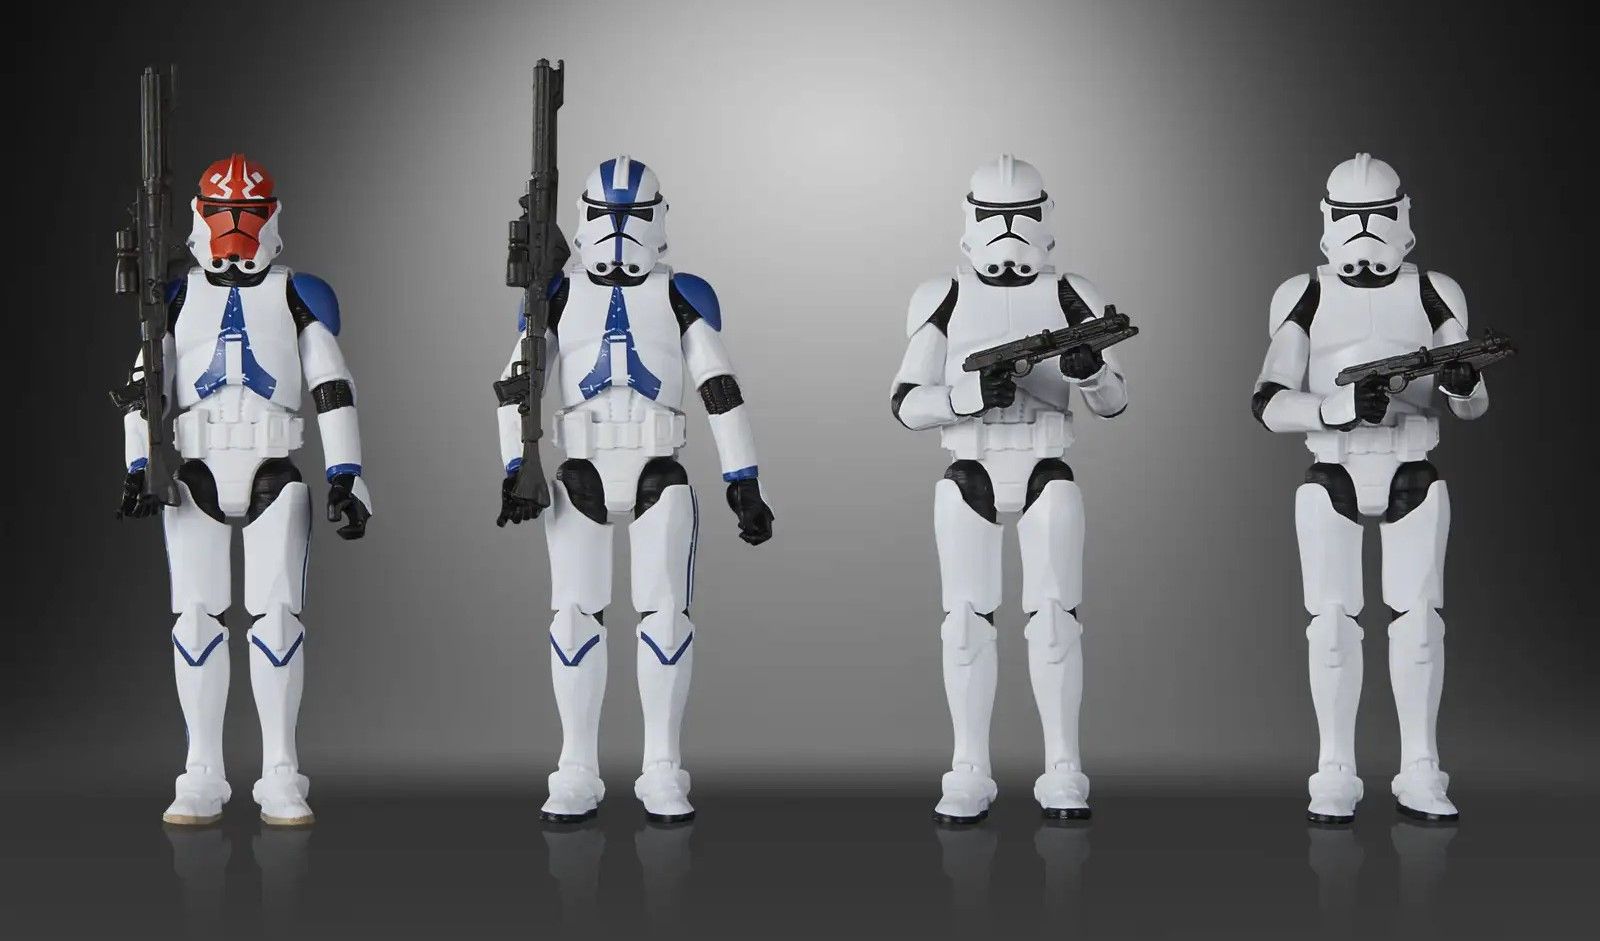 Série Vintage de figuras de soldados clones de Star Wars da Hasbro, apresentando duas novas adições baseadas no programa de TV Ahsoka.